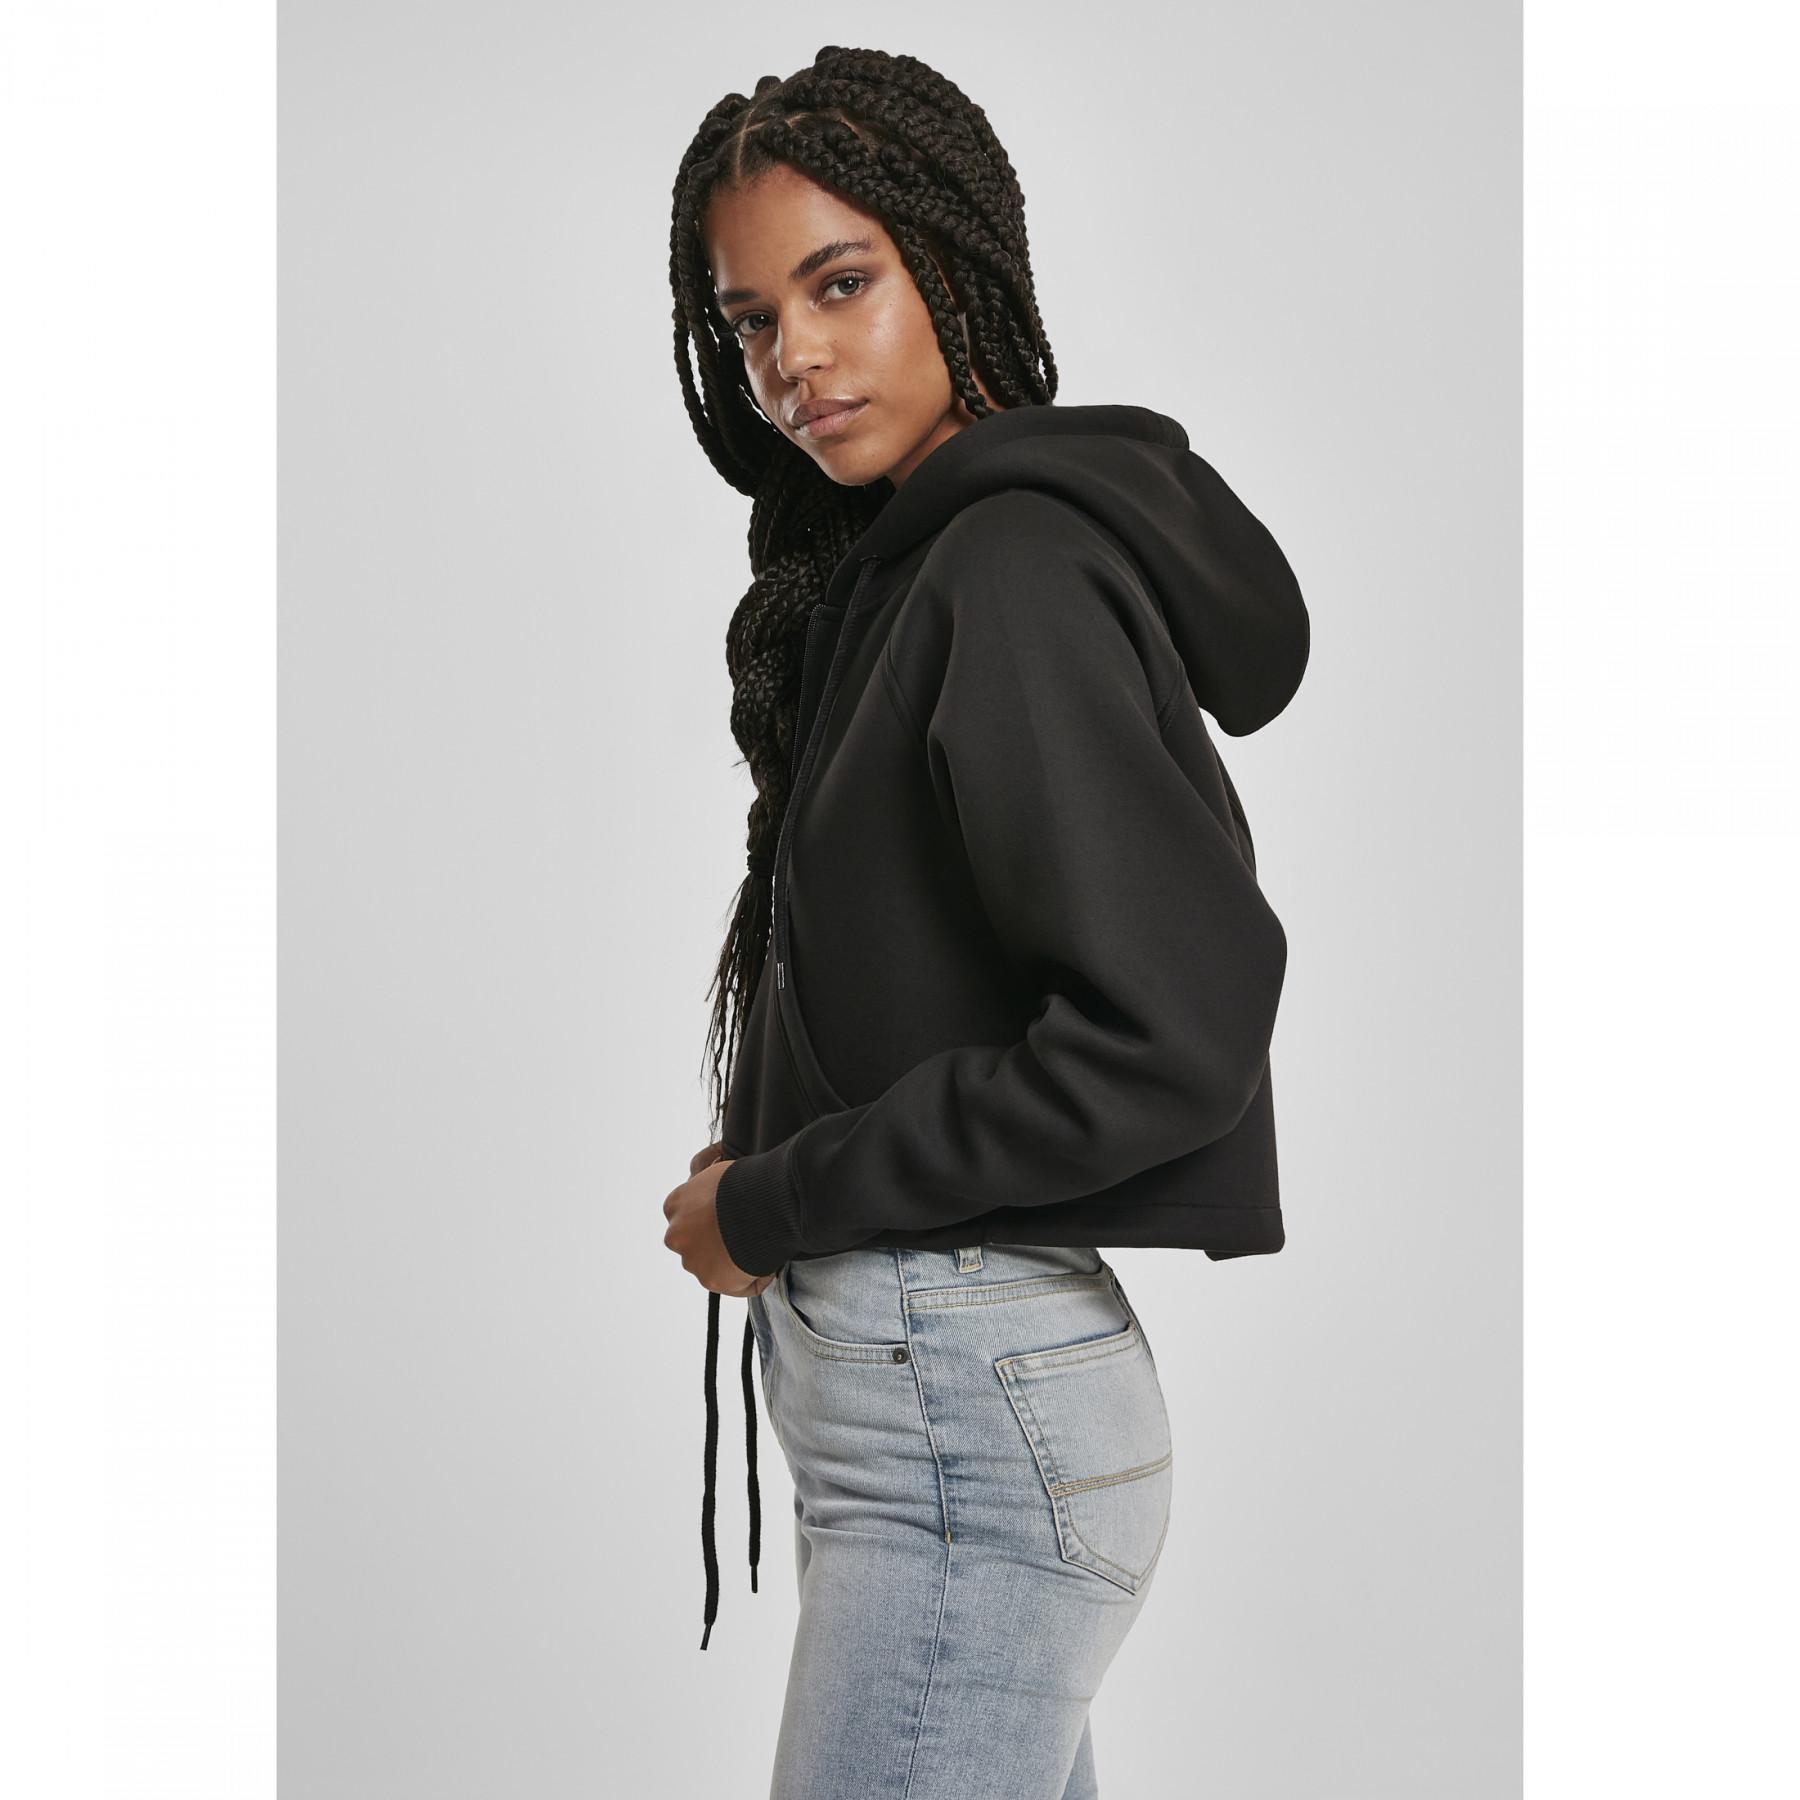 Women's Urban Classic oversized raglan zip sweatshirt